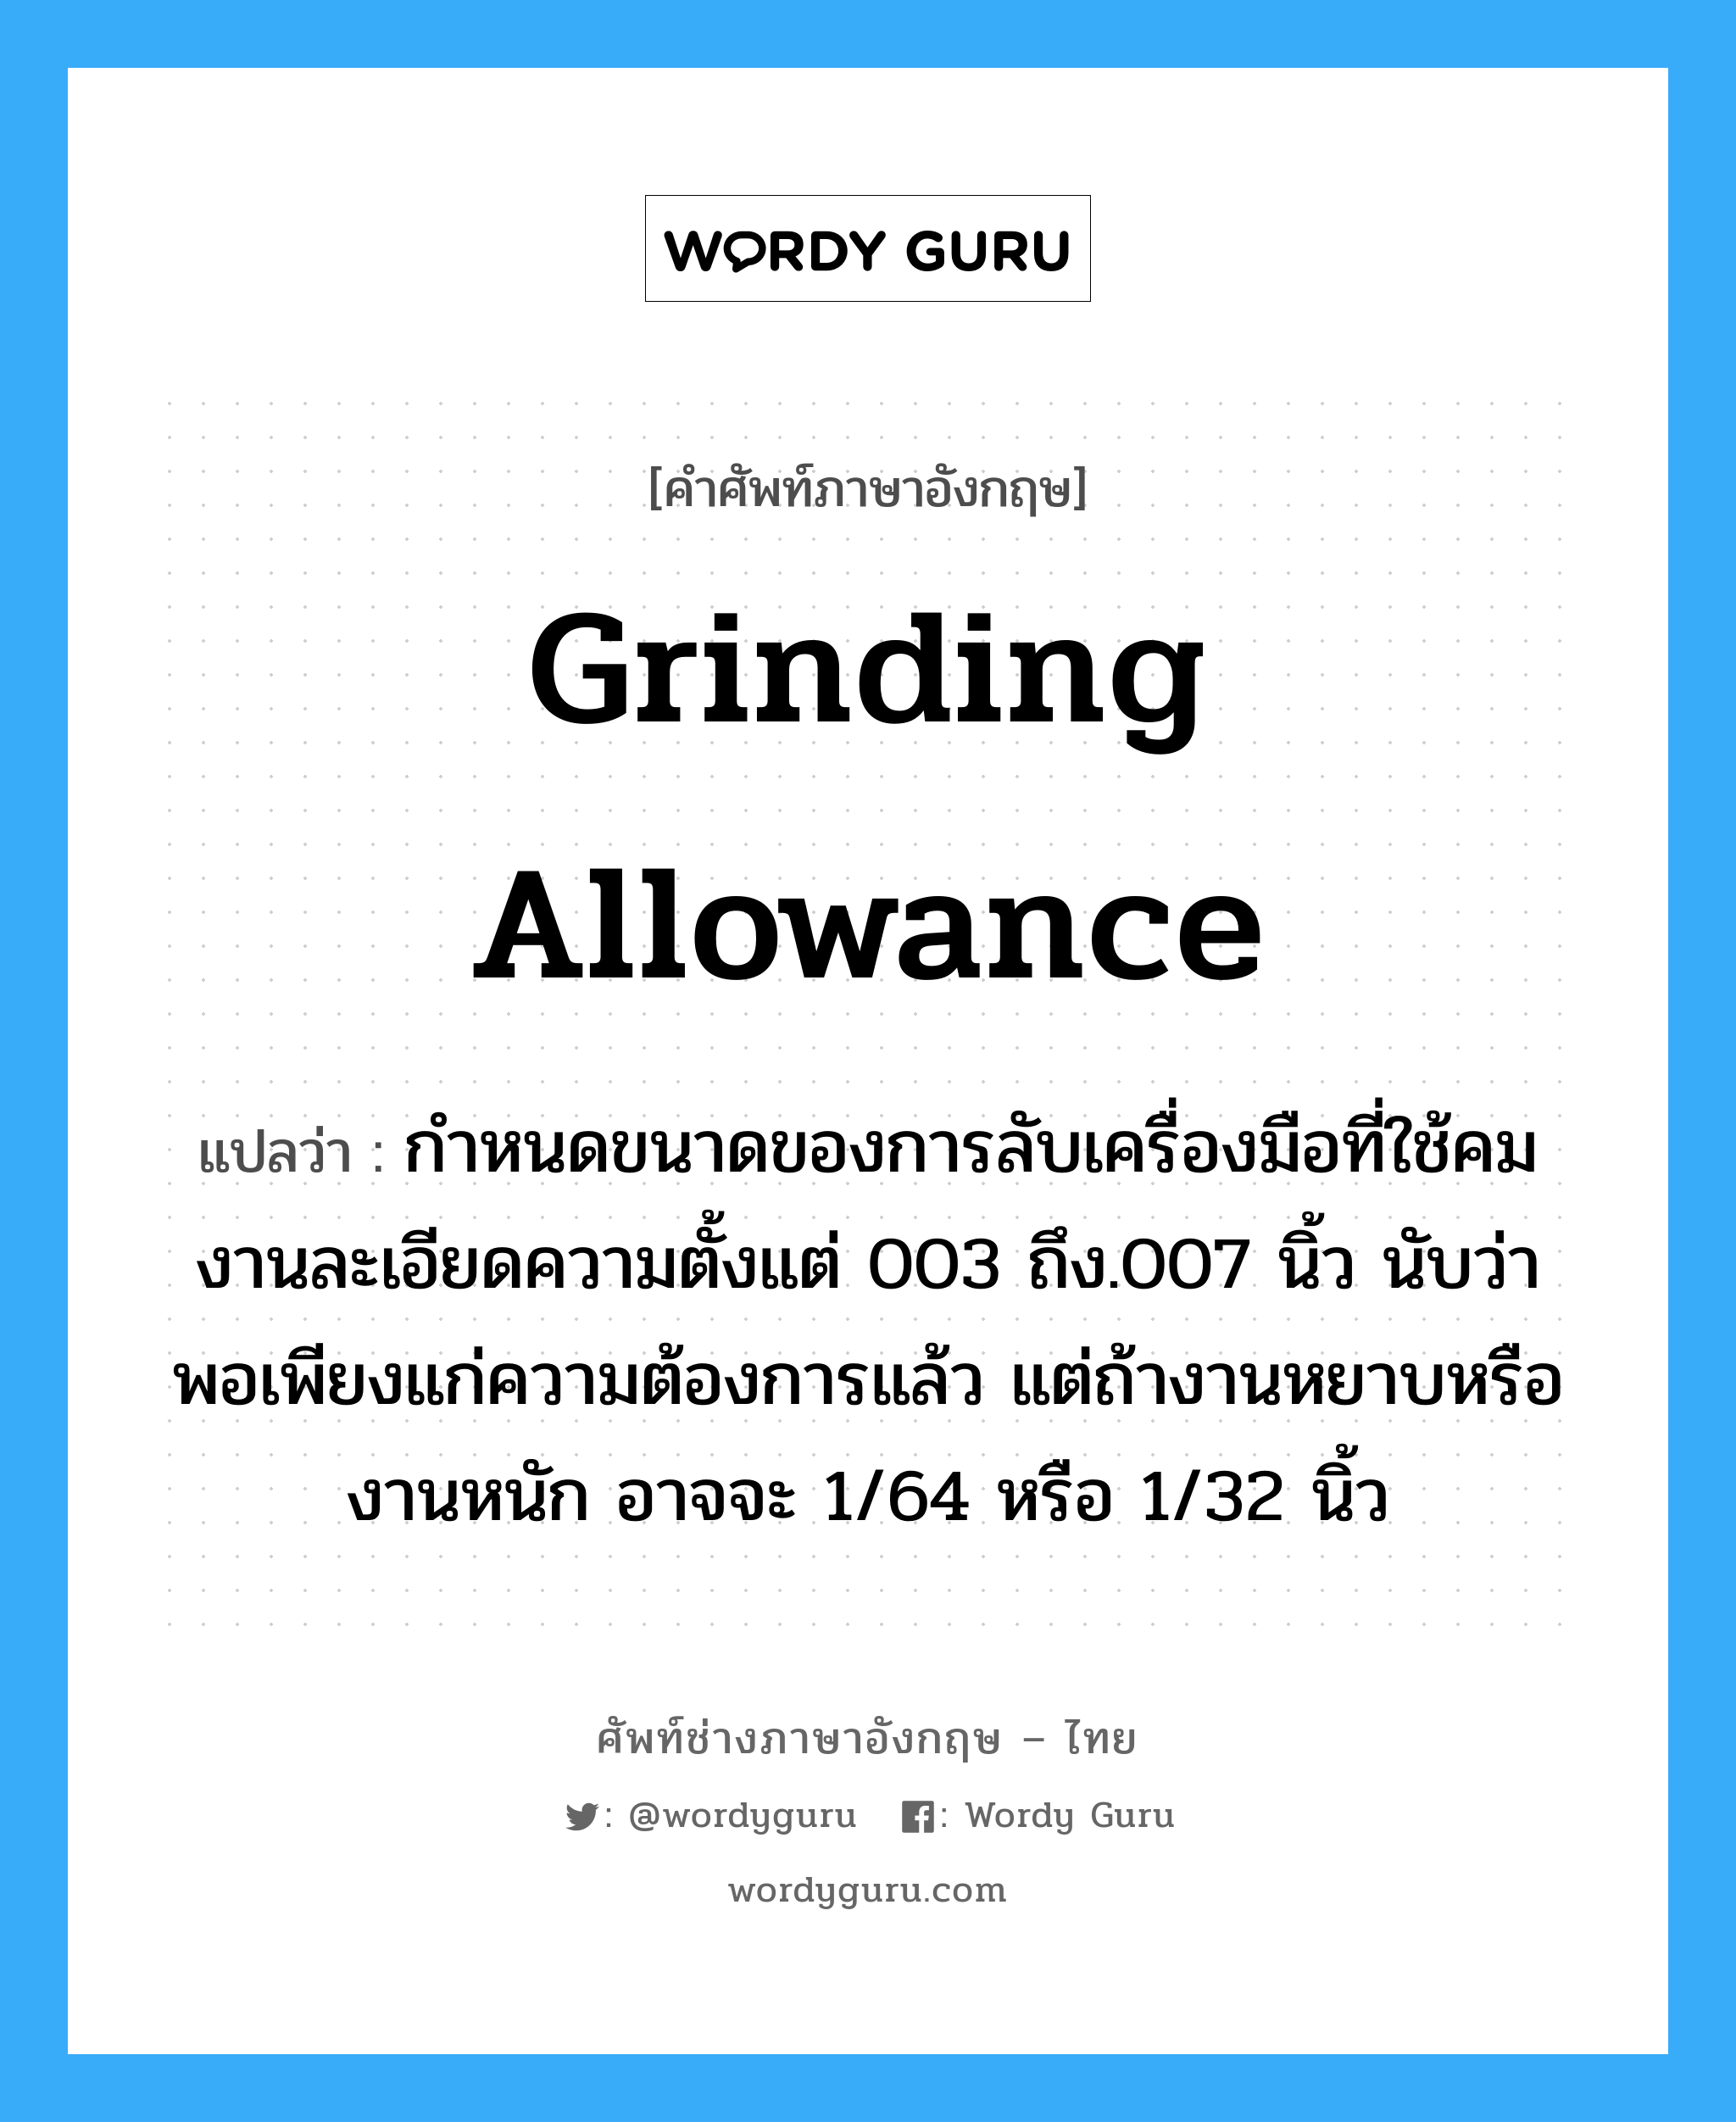 grinding allowance แปลว่า?, คำศัพท์ช่างภาษาอังกฤษ - ไทย grinding allowance คำศัพท์ภาษาอังกฤษ grinding allowance แปลว่า กำหนดขนาดของการลับเครื่องมือที่ใช้คม งานละเอียดความตั้งแต่ 003 ถึง.007 นิ้ว นับว่าพอเพียงแก่ความต้องการแล้ว แต่ถ้างานหยาบหรืองานหนัก อาจจะ 1/64 หรือ 1/32 นิ้ว